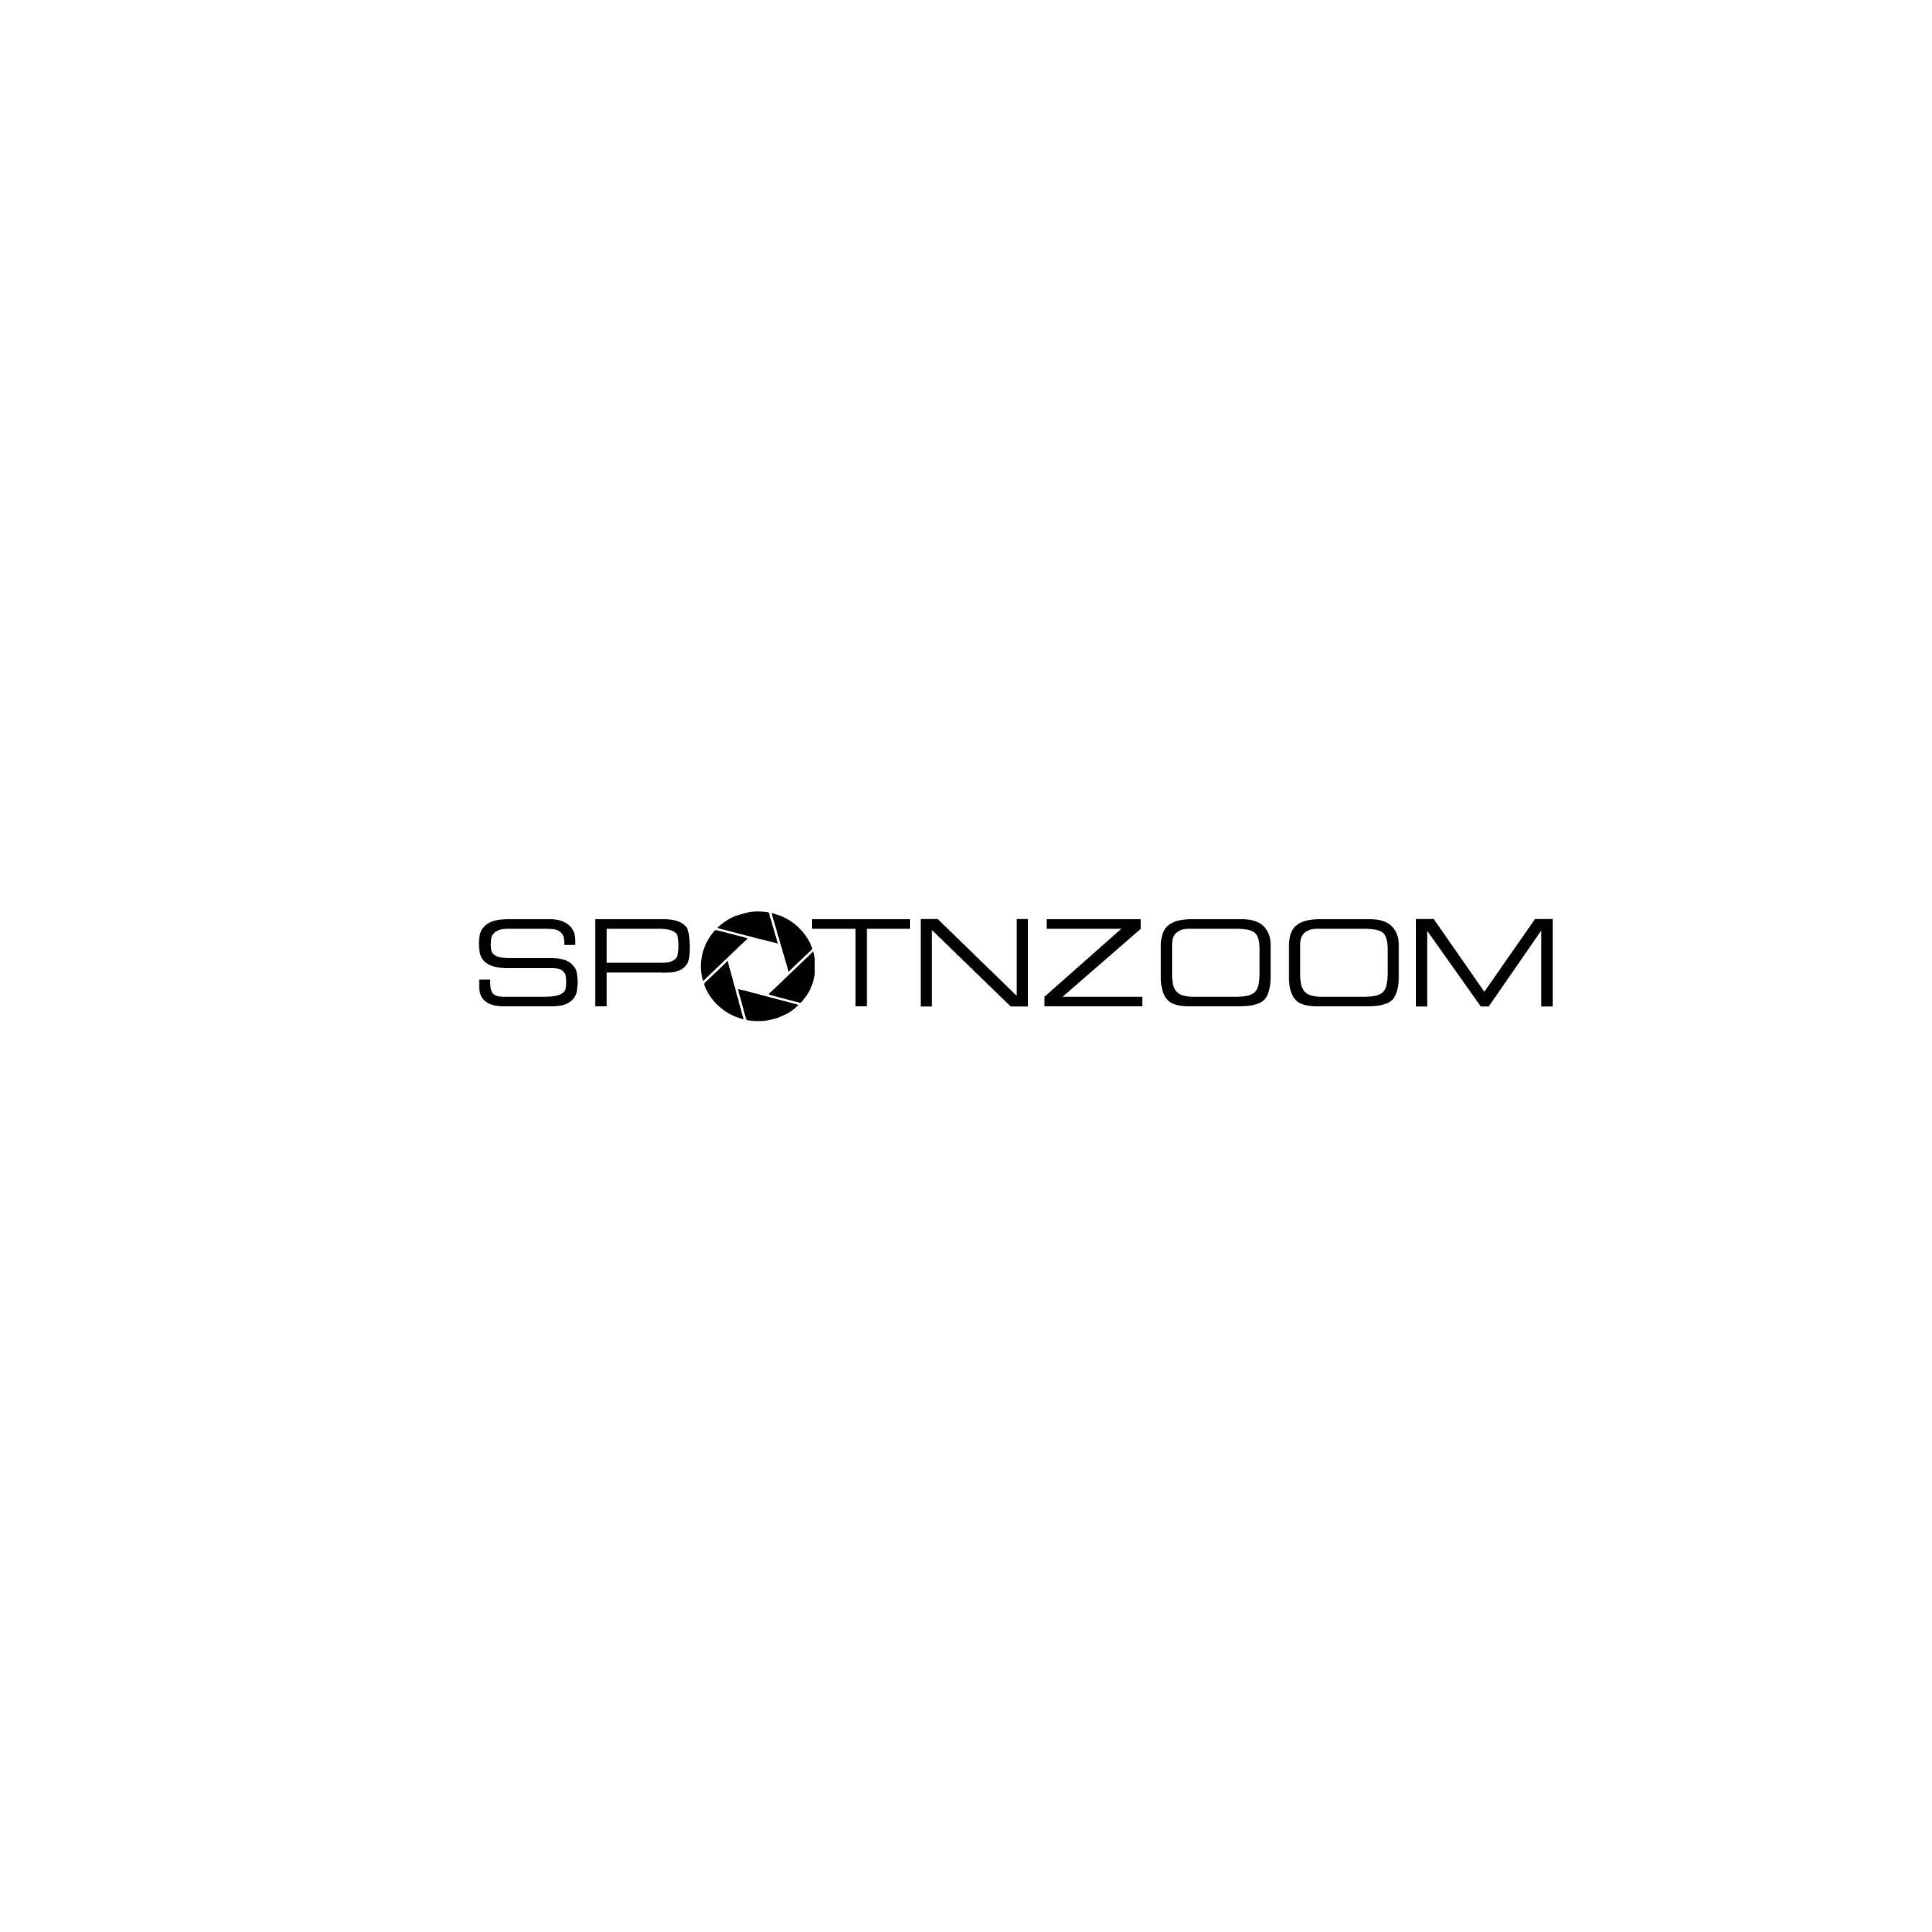 SpotNzoom logo